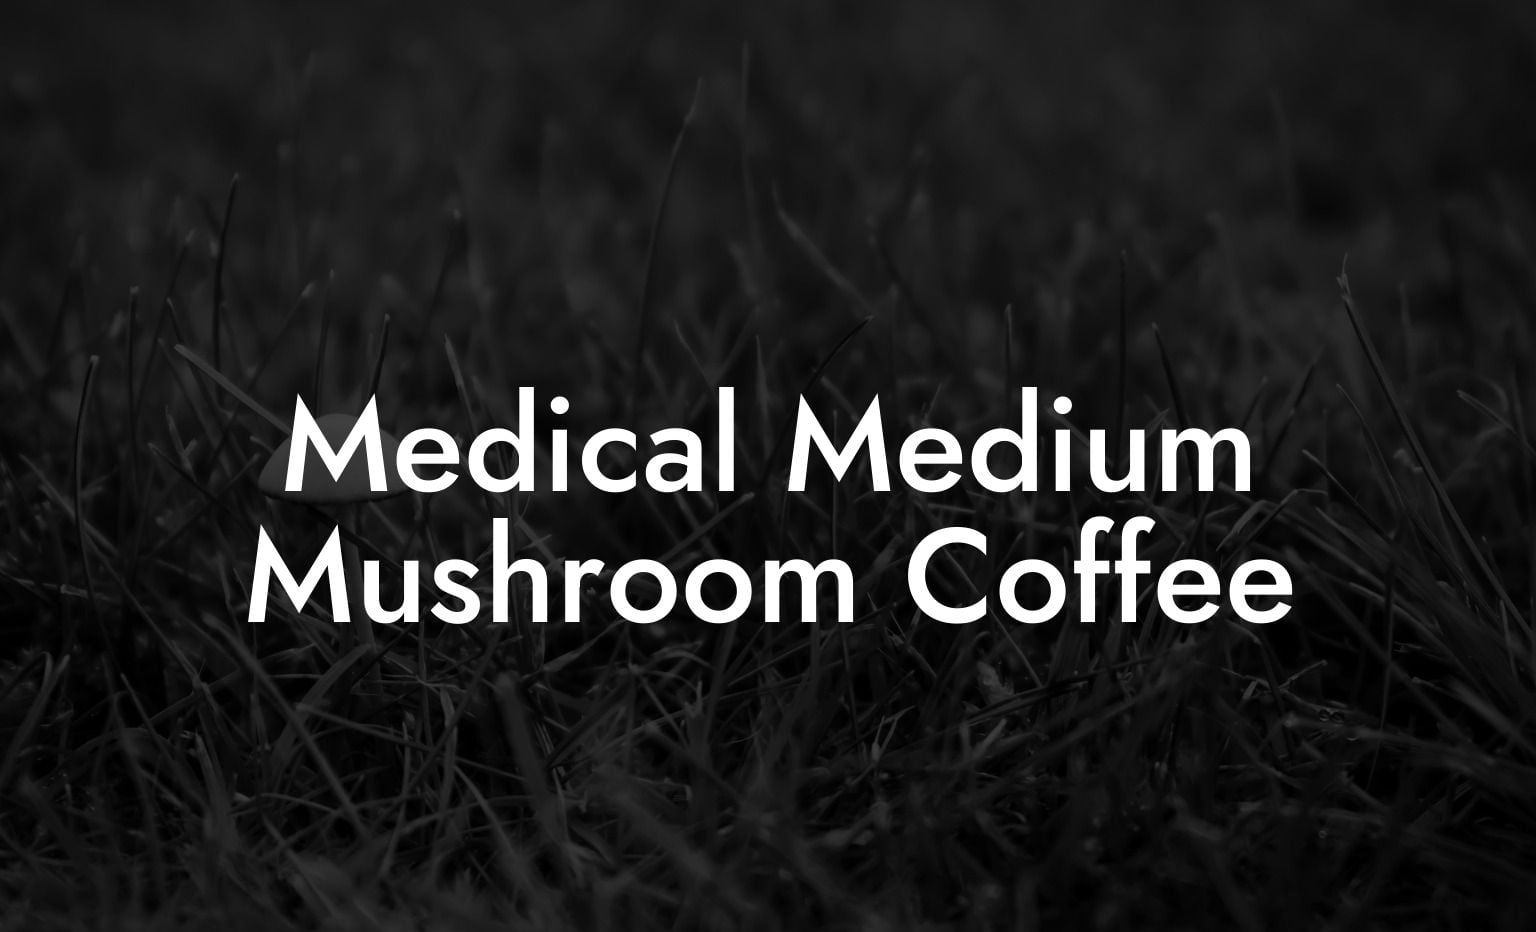 Medical Medium Mushroom Coffee